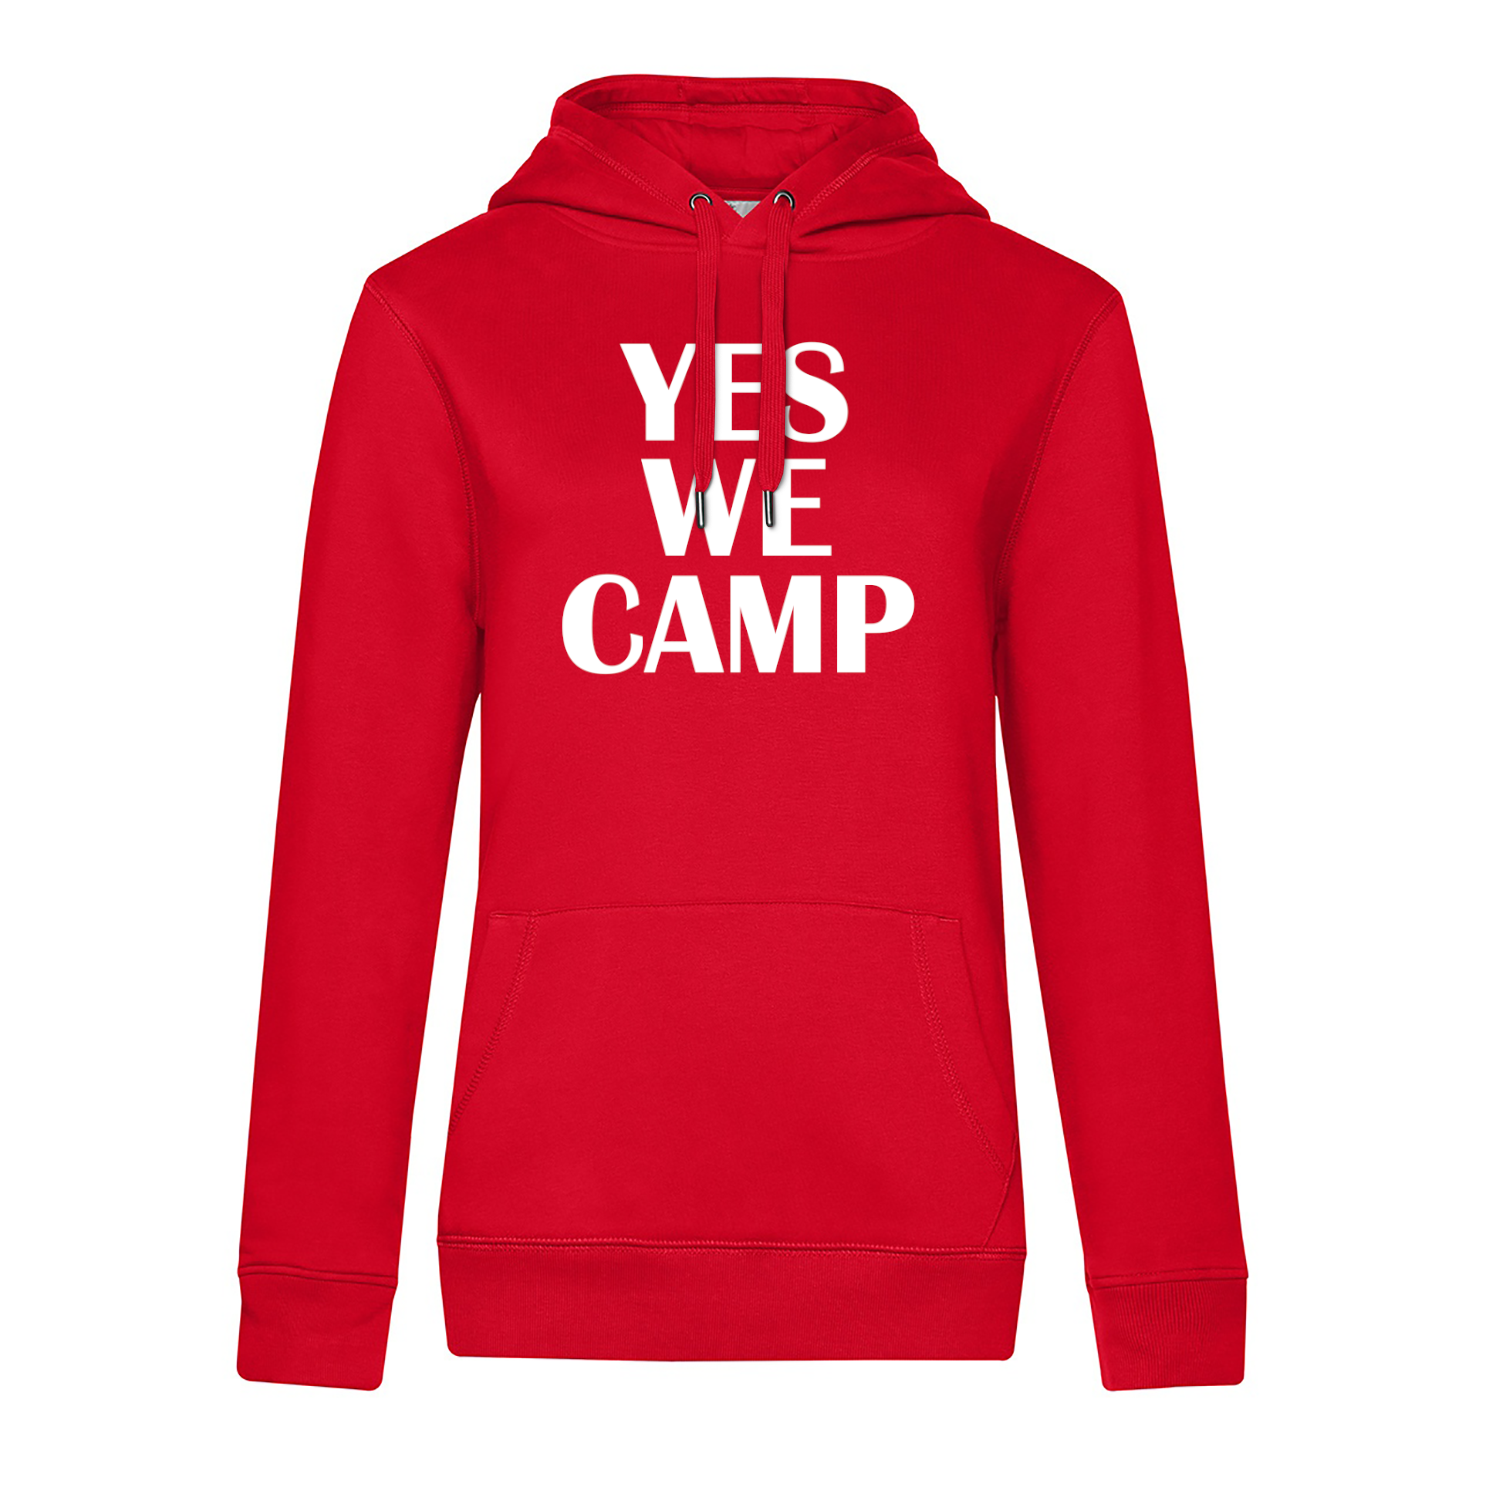 YES WE CAMP - Camping Hoodie für Frauen - Unser Hoodie für Camper ist die ideale Camping Kleidung. Unsere Hoodies eignen sich für Wohnmobil, Wohnwagen oder Dauercamper. Ideal auch als Geschenk für Camper.